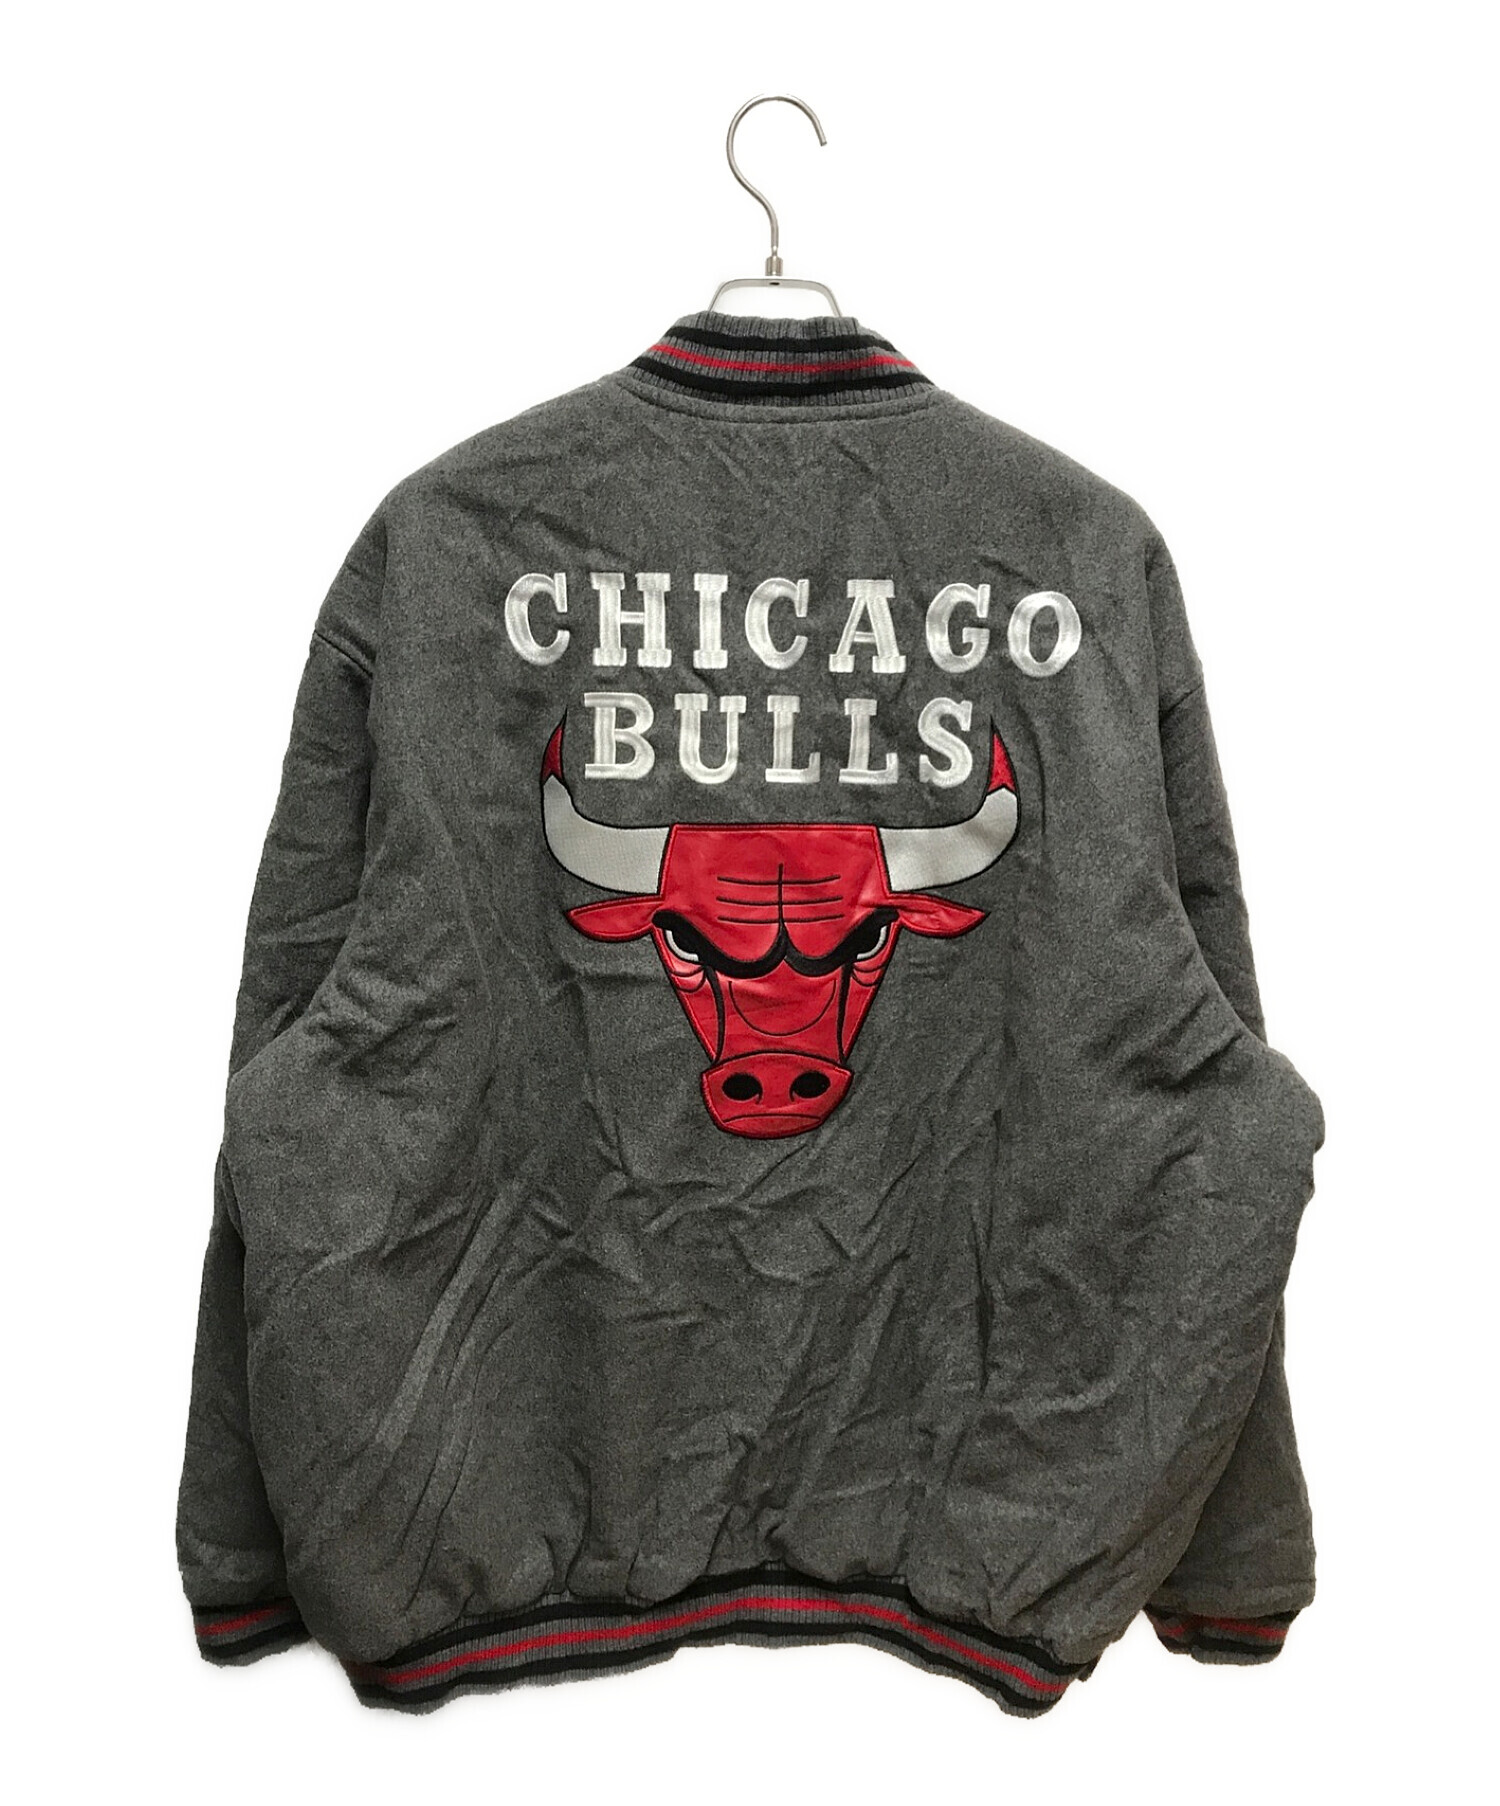 Pro standard Chicago bulls シカゴ・ブルズ スタジャン - スタジャン